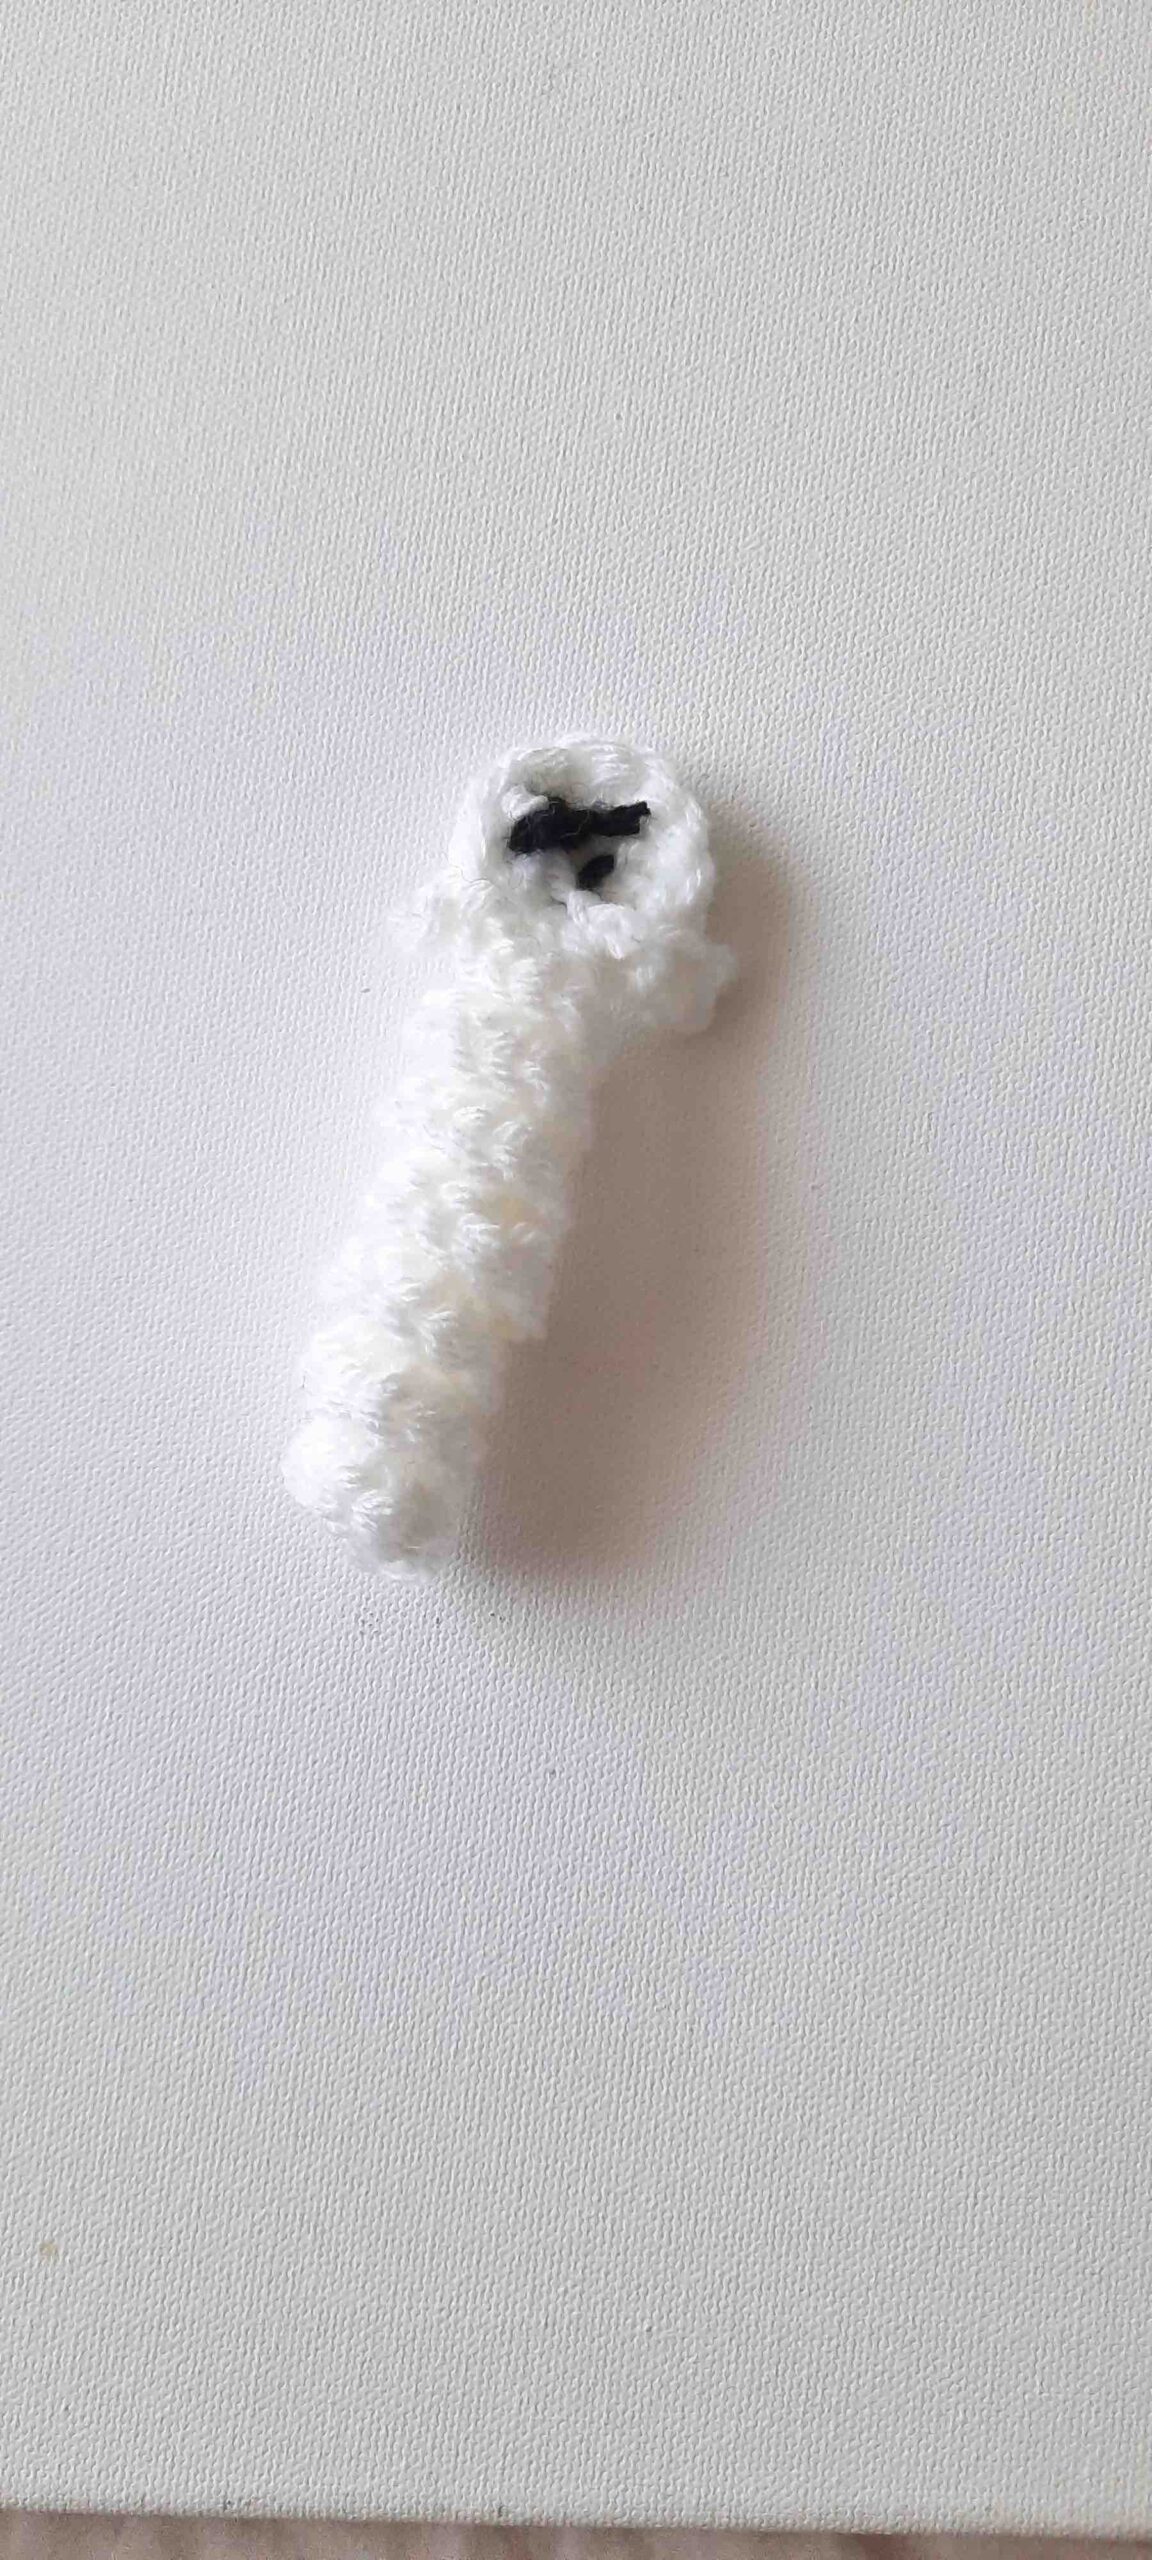 ghost crochet pattern